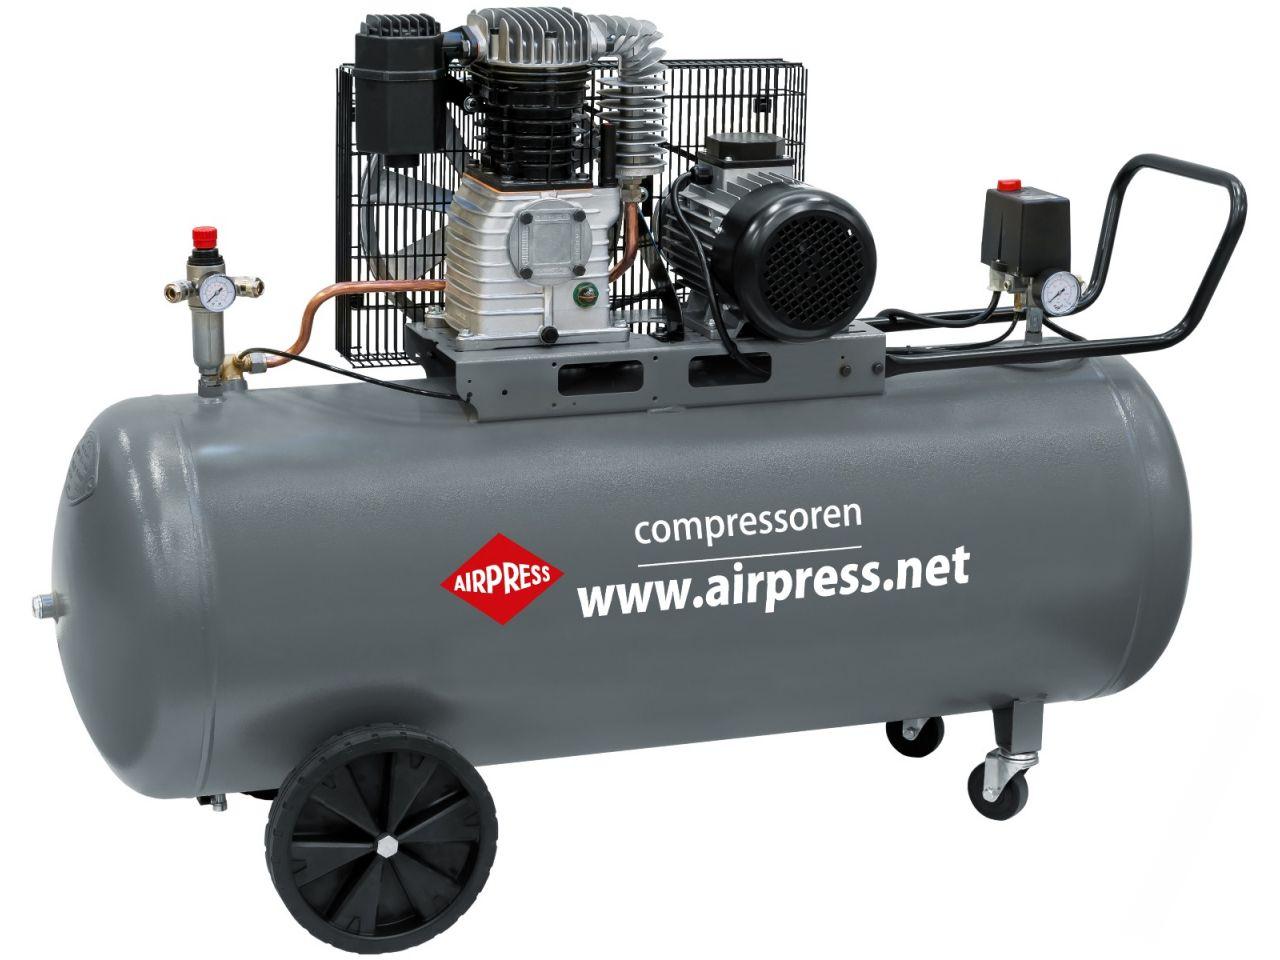 Kompresor HK 600-200 Pro 10 bar 4 KM 380 l / min 200 l AIRPRESS